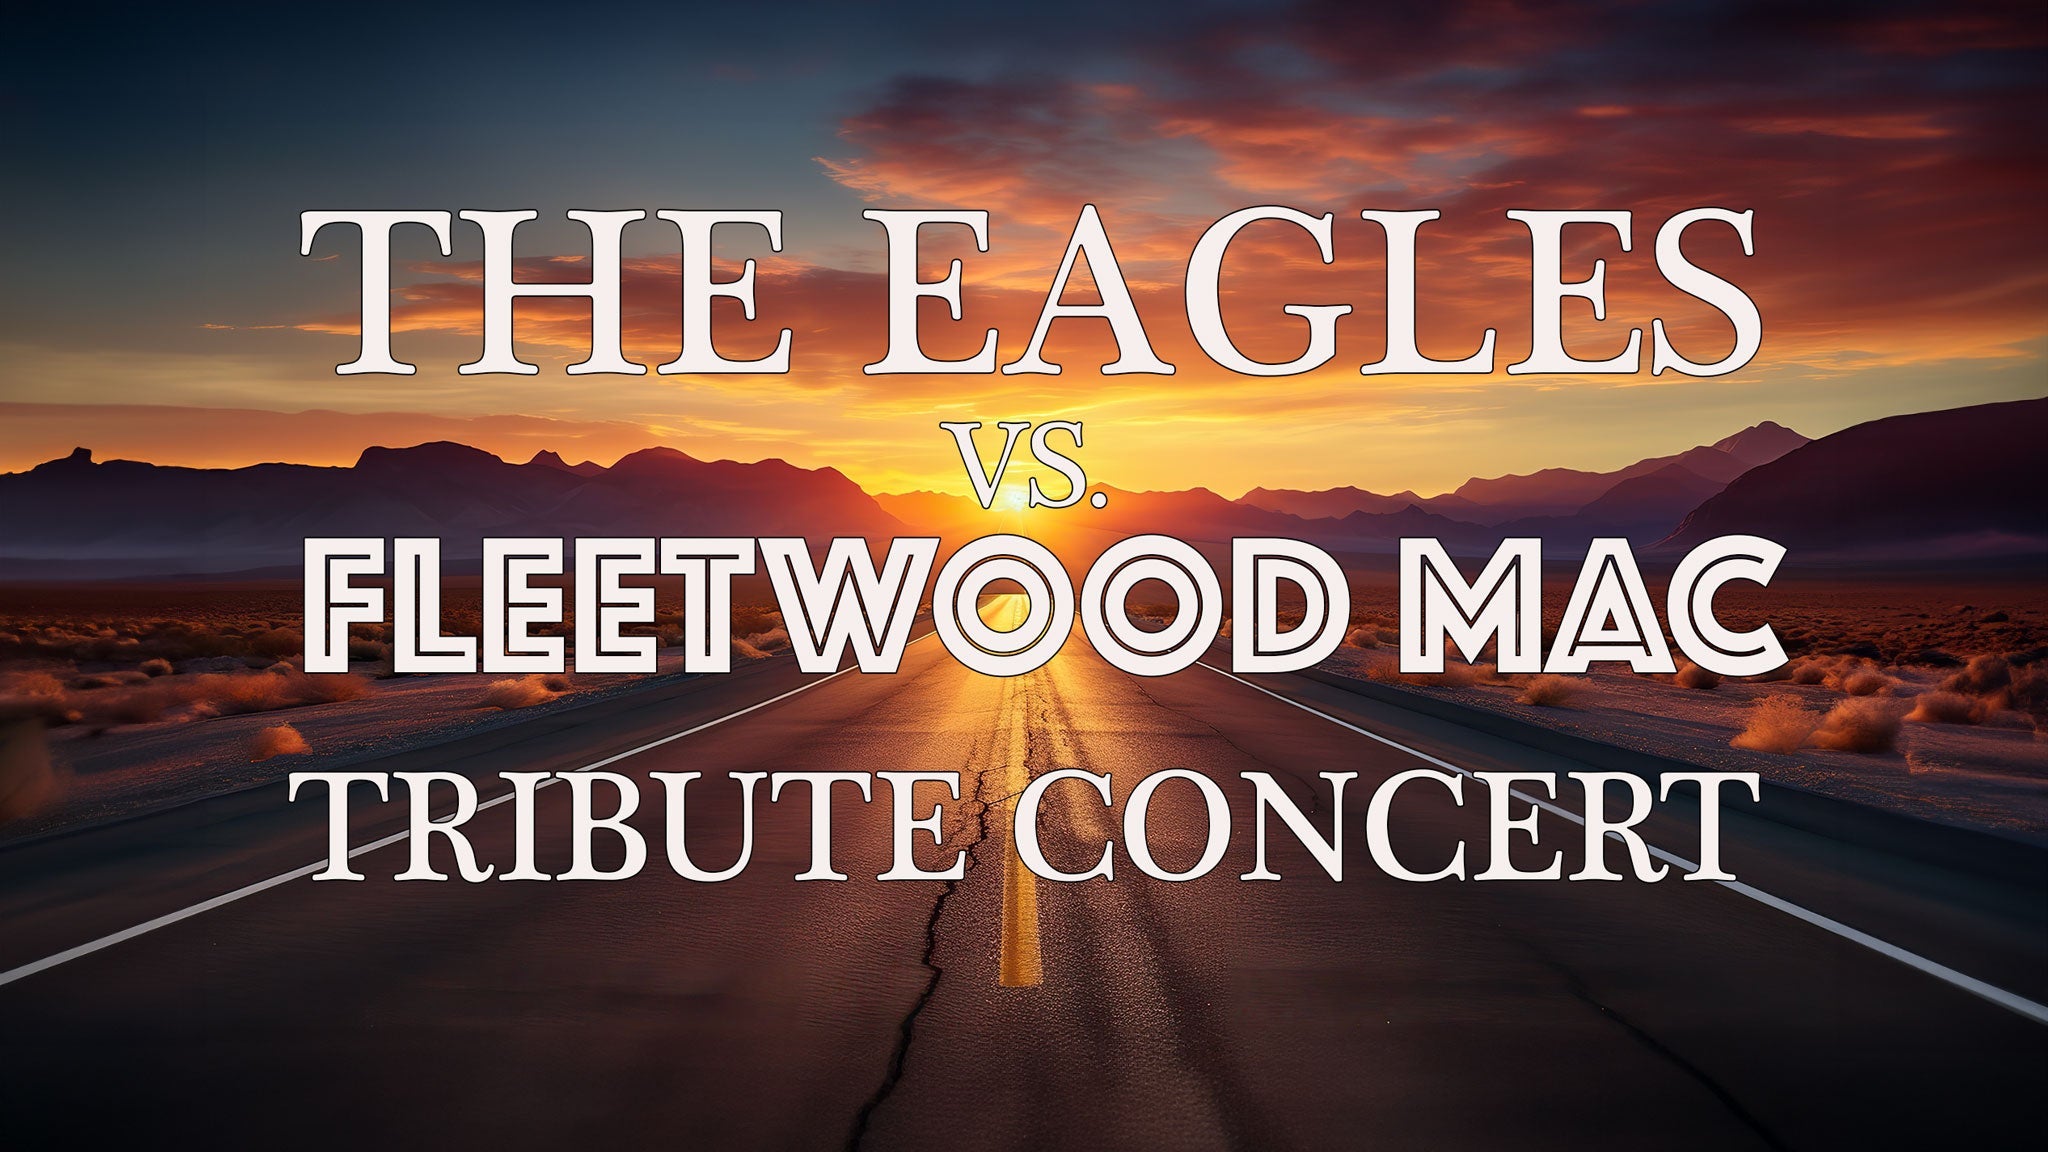 The Eagles vs. Fleetwood Mac Tribute Concert